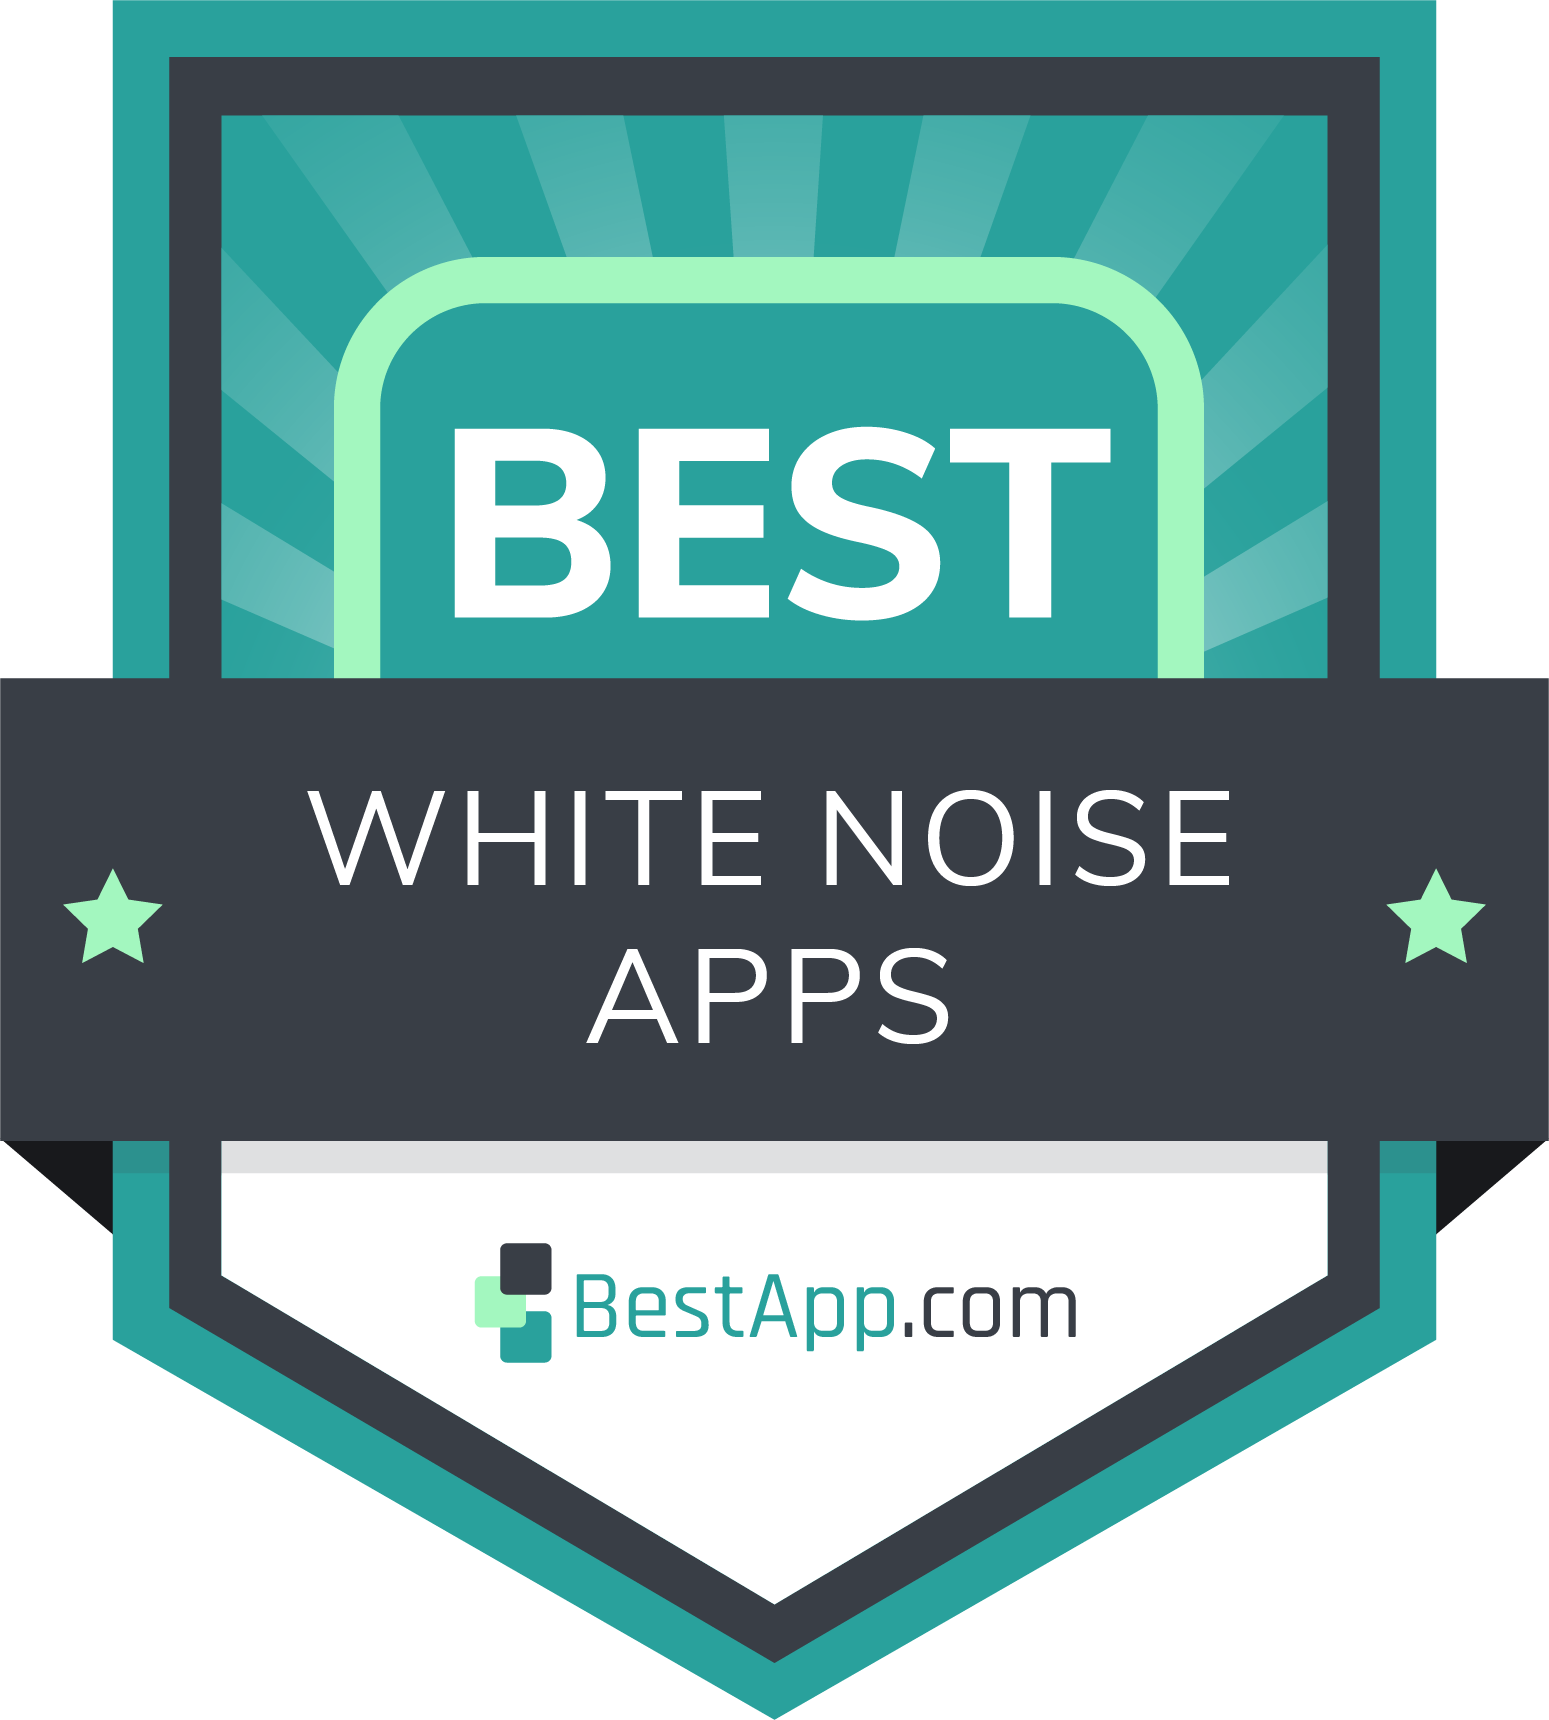 Best White Noise Apps Badge